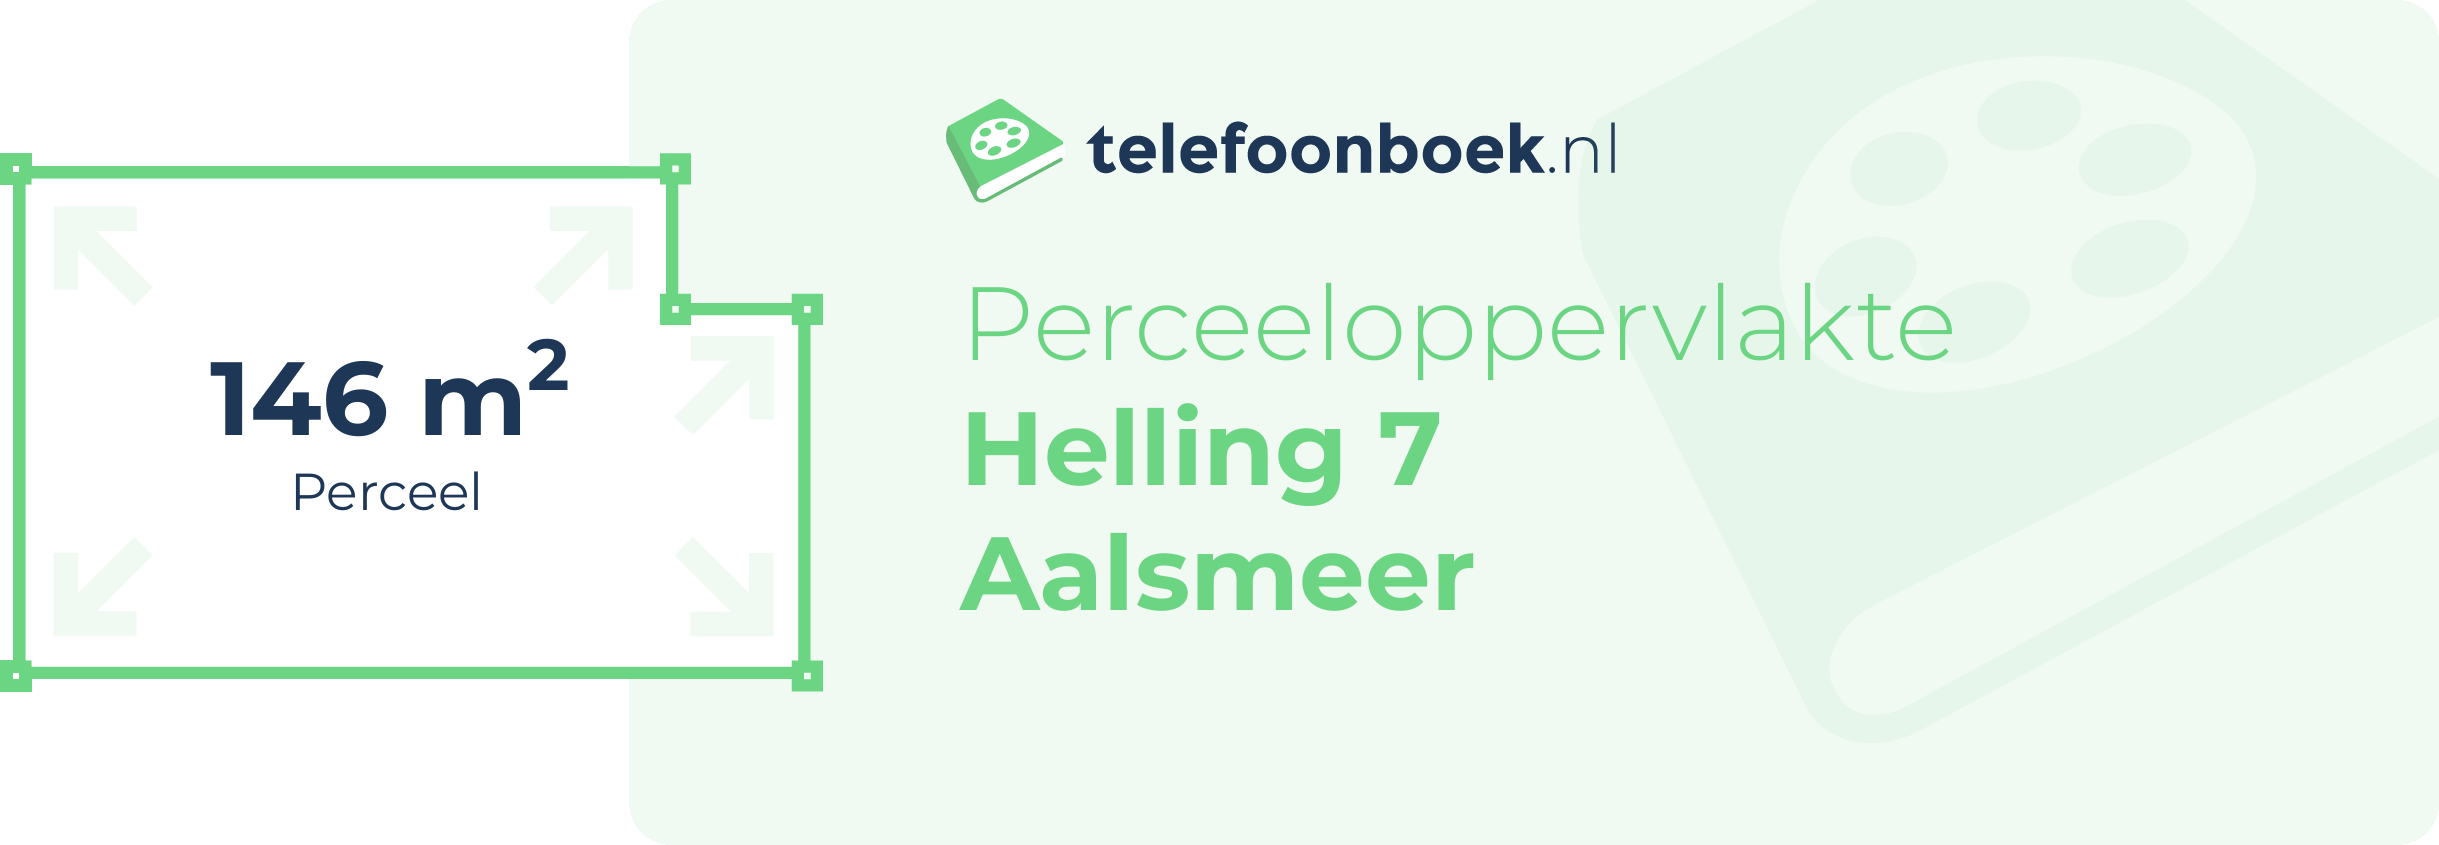 Perceeloppervlakte Helling 7 Aalsmeer